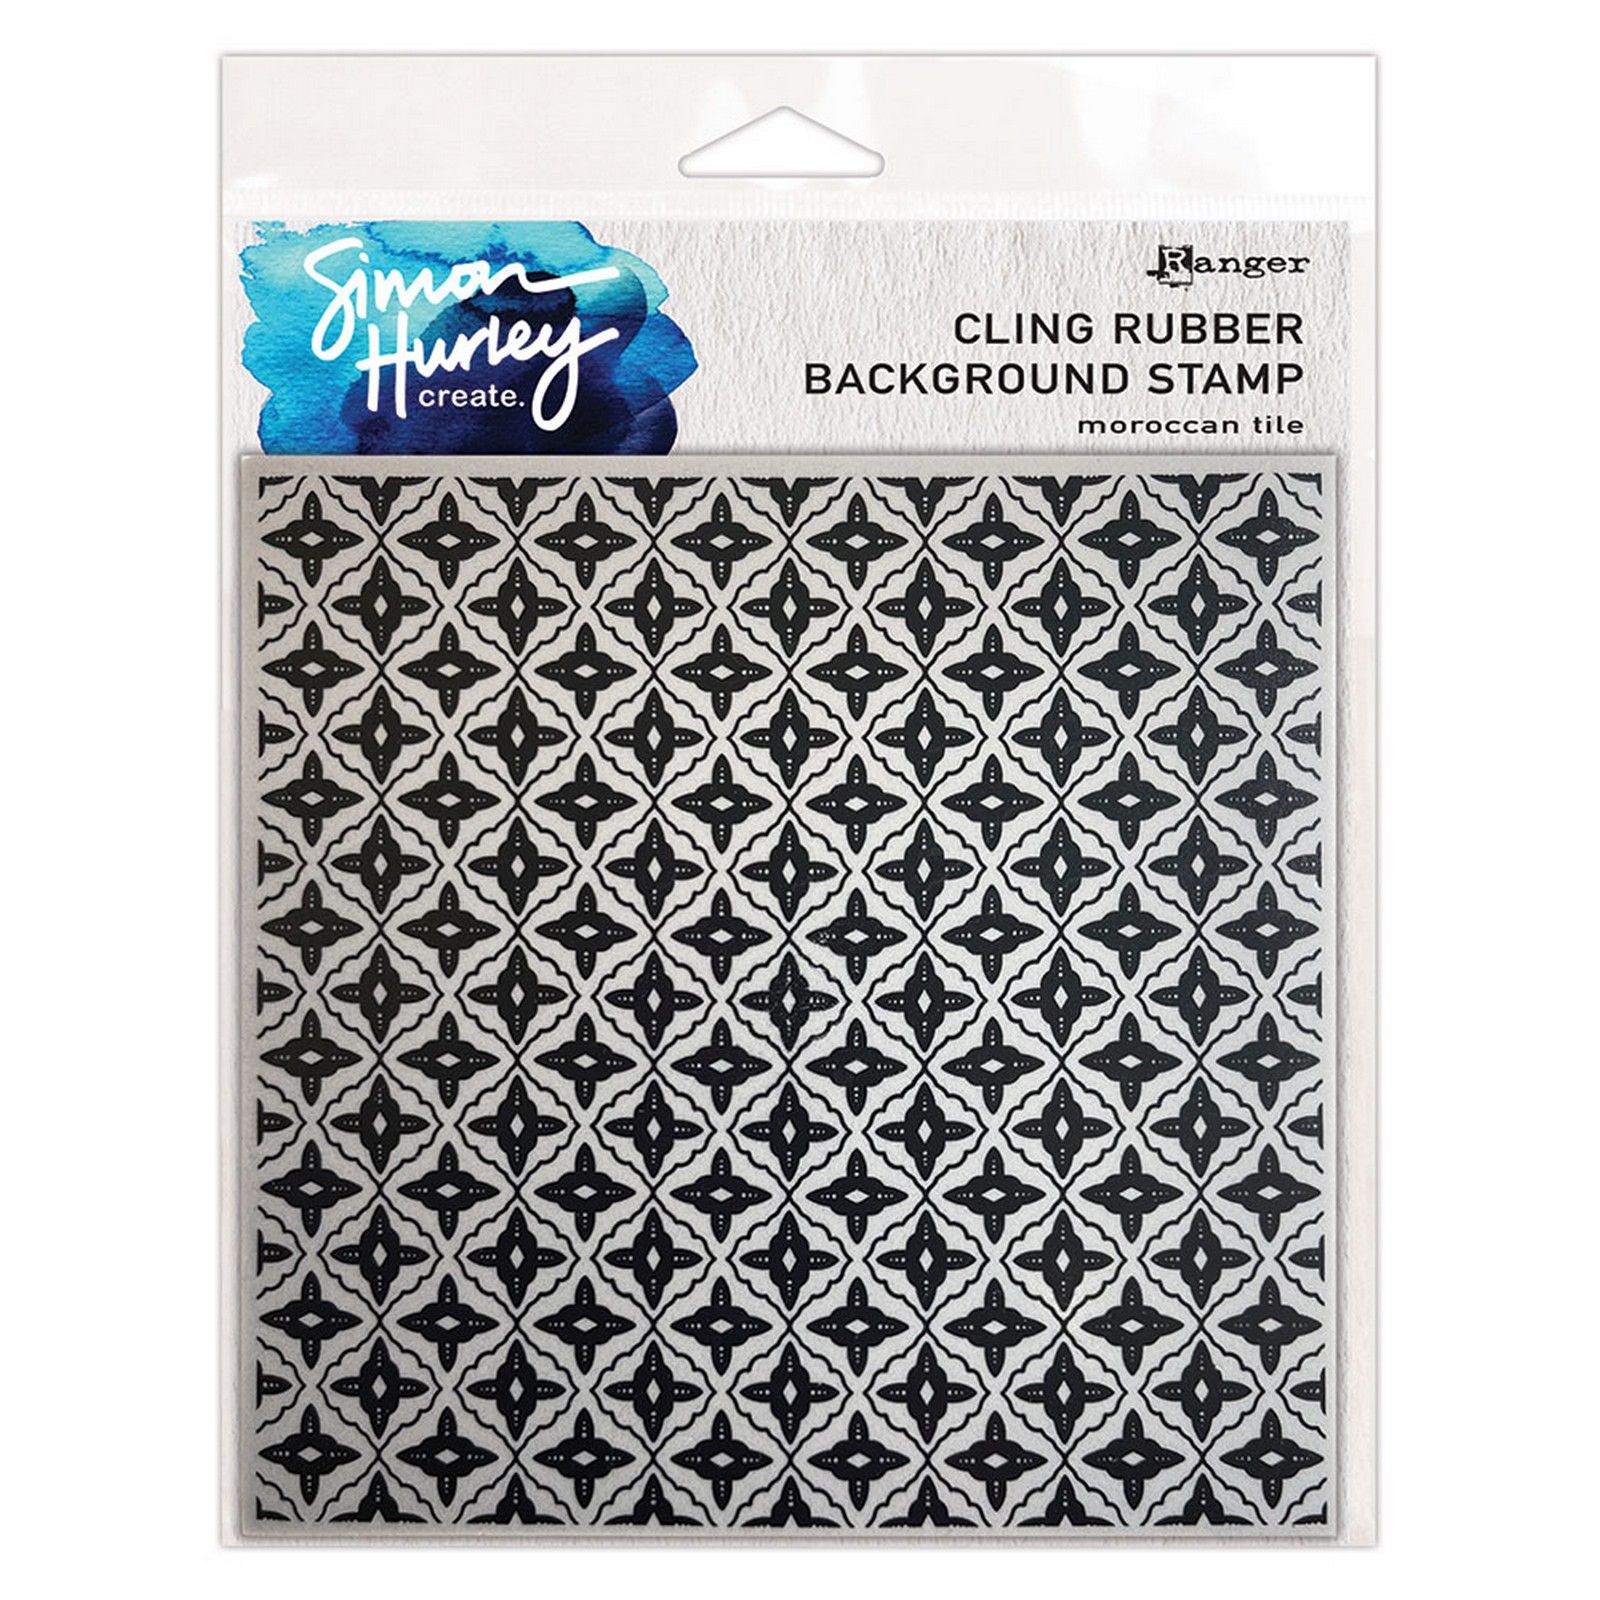 Ranger • Simon Hurley create. Background Stamp Morrocan Tile